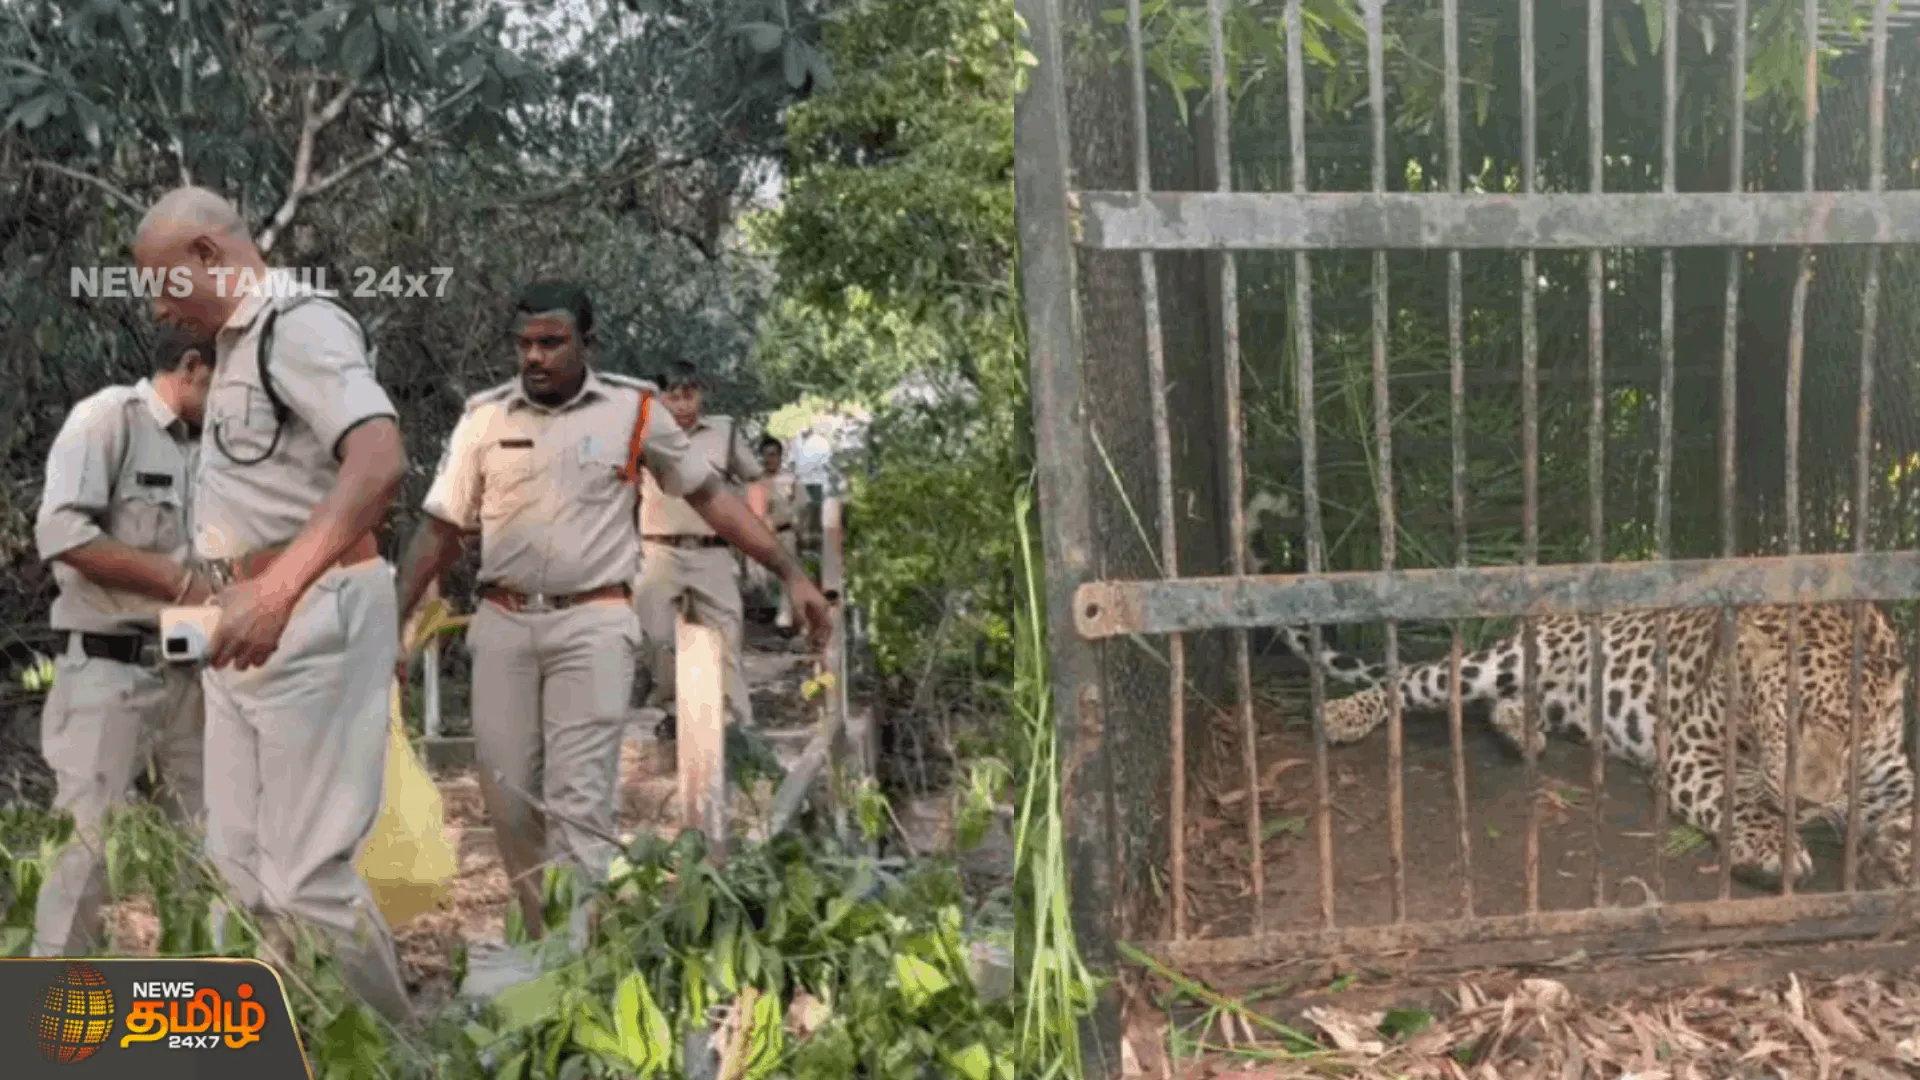 திருப்பதி வனத்துறையால் மேலும் ஒரு சிறுத்தை பிடிபட்டது  மலைப்பாதையில் மக்களை அச்சுறுத்தி வந்த சிறுத்தை பிடிபட்டது|  Tirupati Forest Department